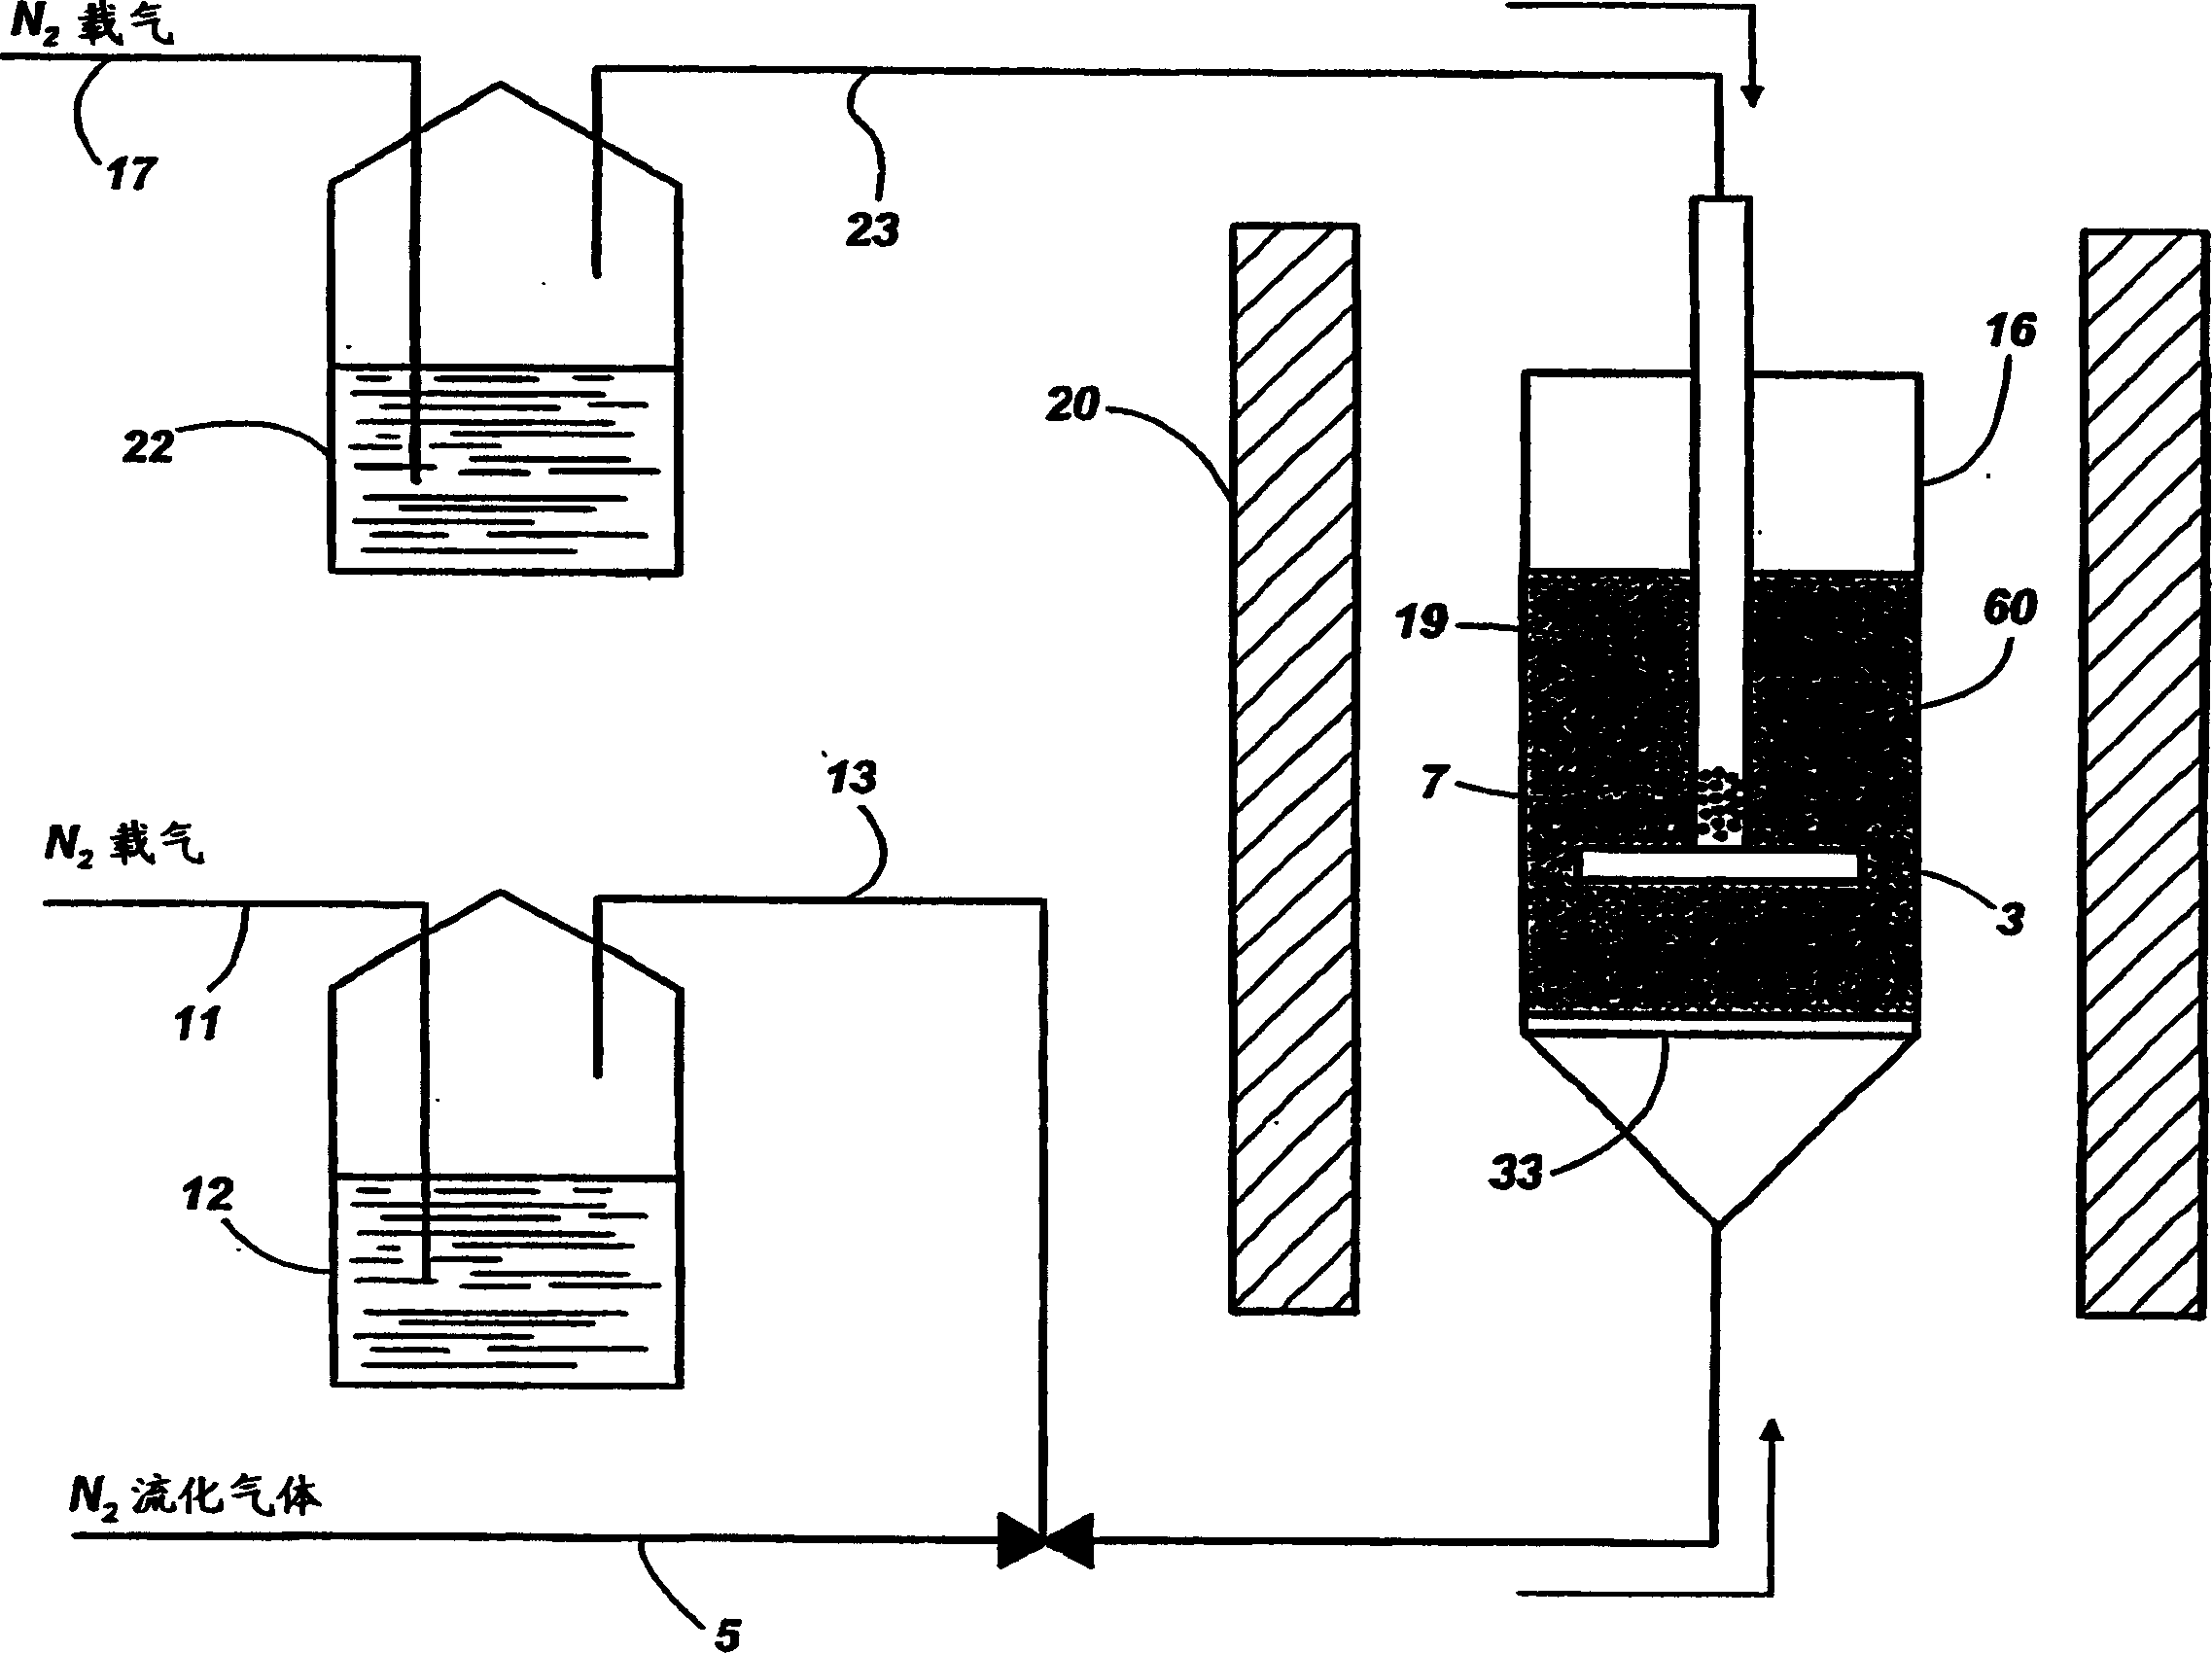 A method to encapsulate phosphor via chemical vapor deposition